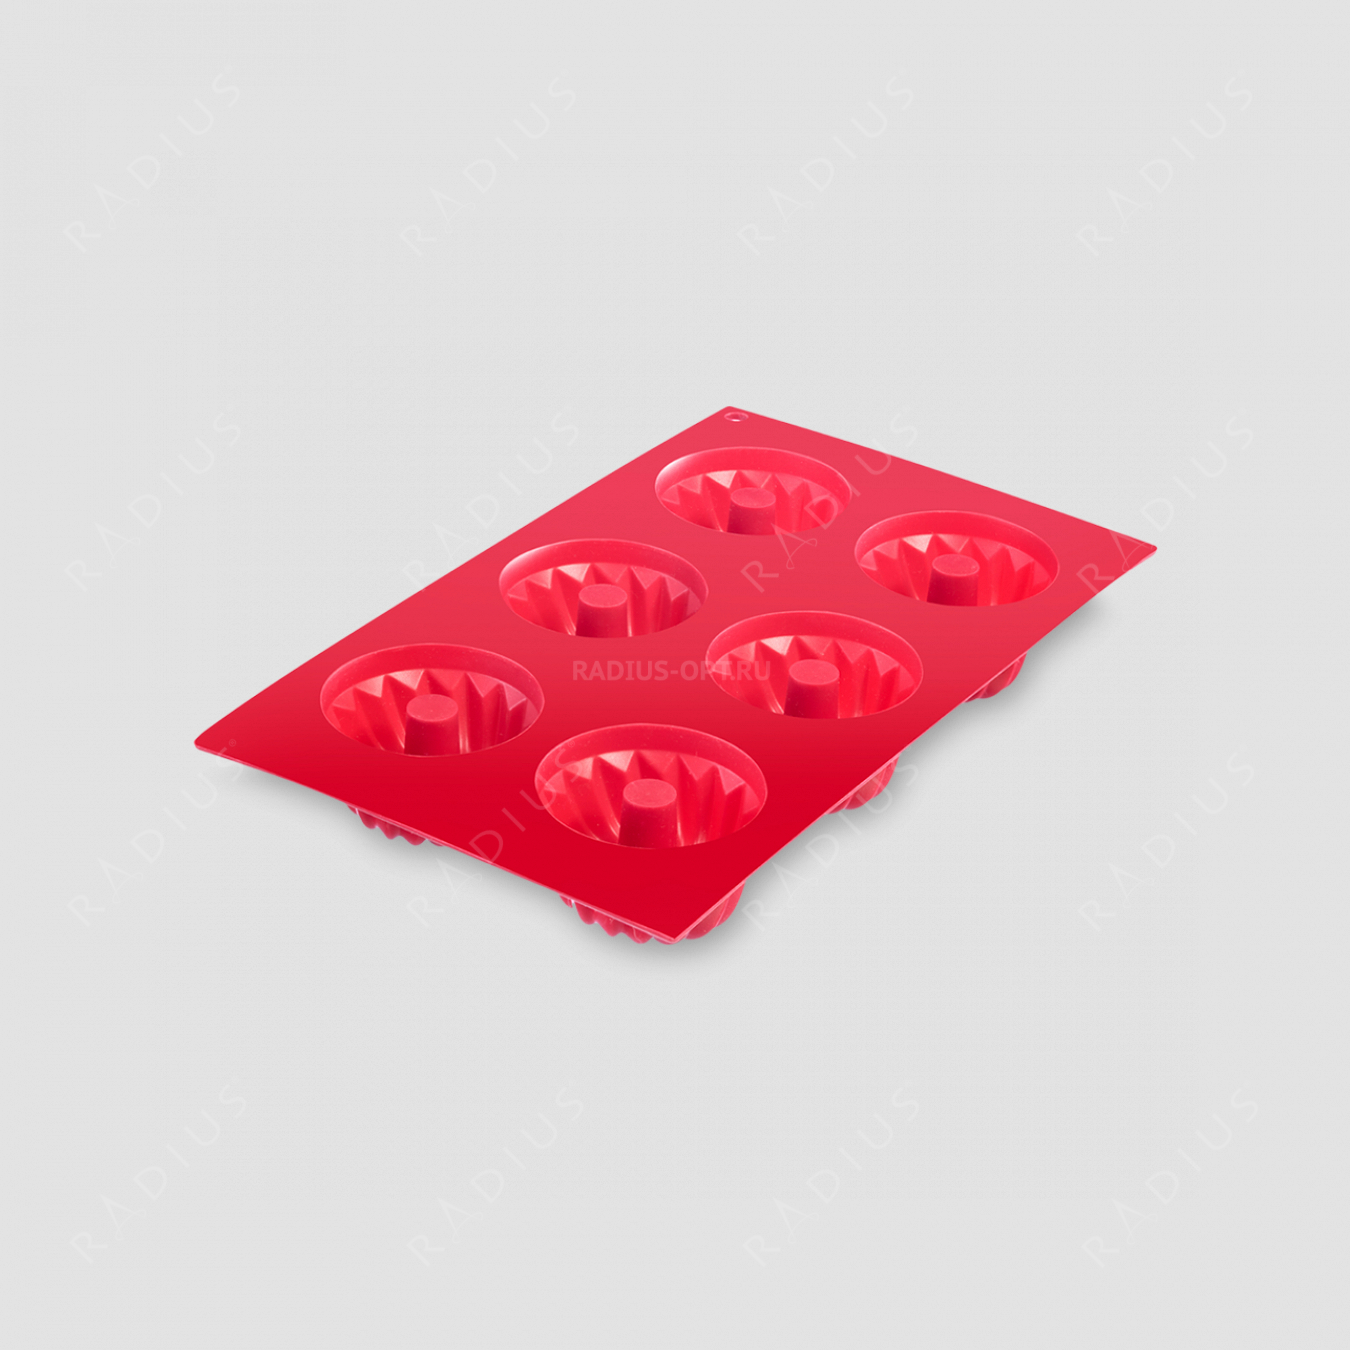 Форма для 6-ти маффинов, силикон, цвет-красный, серия Silicone, Westmark, Германия